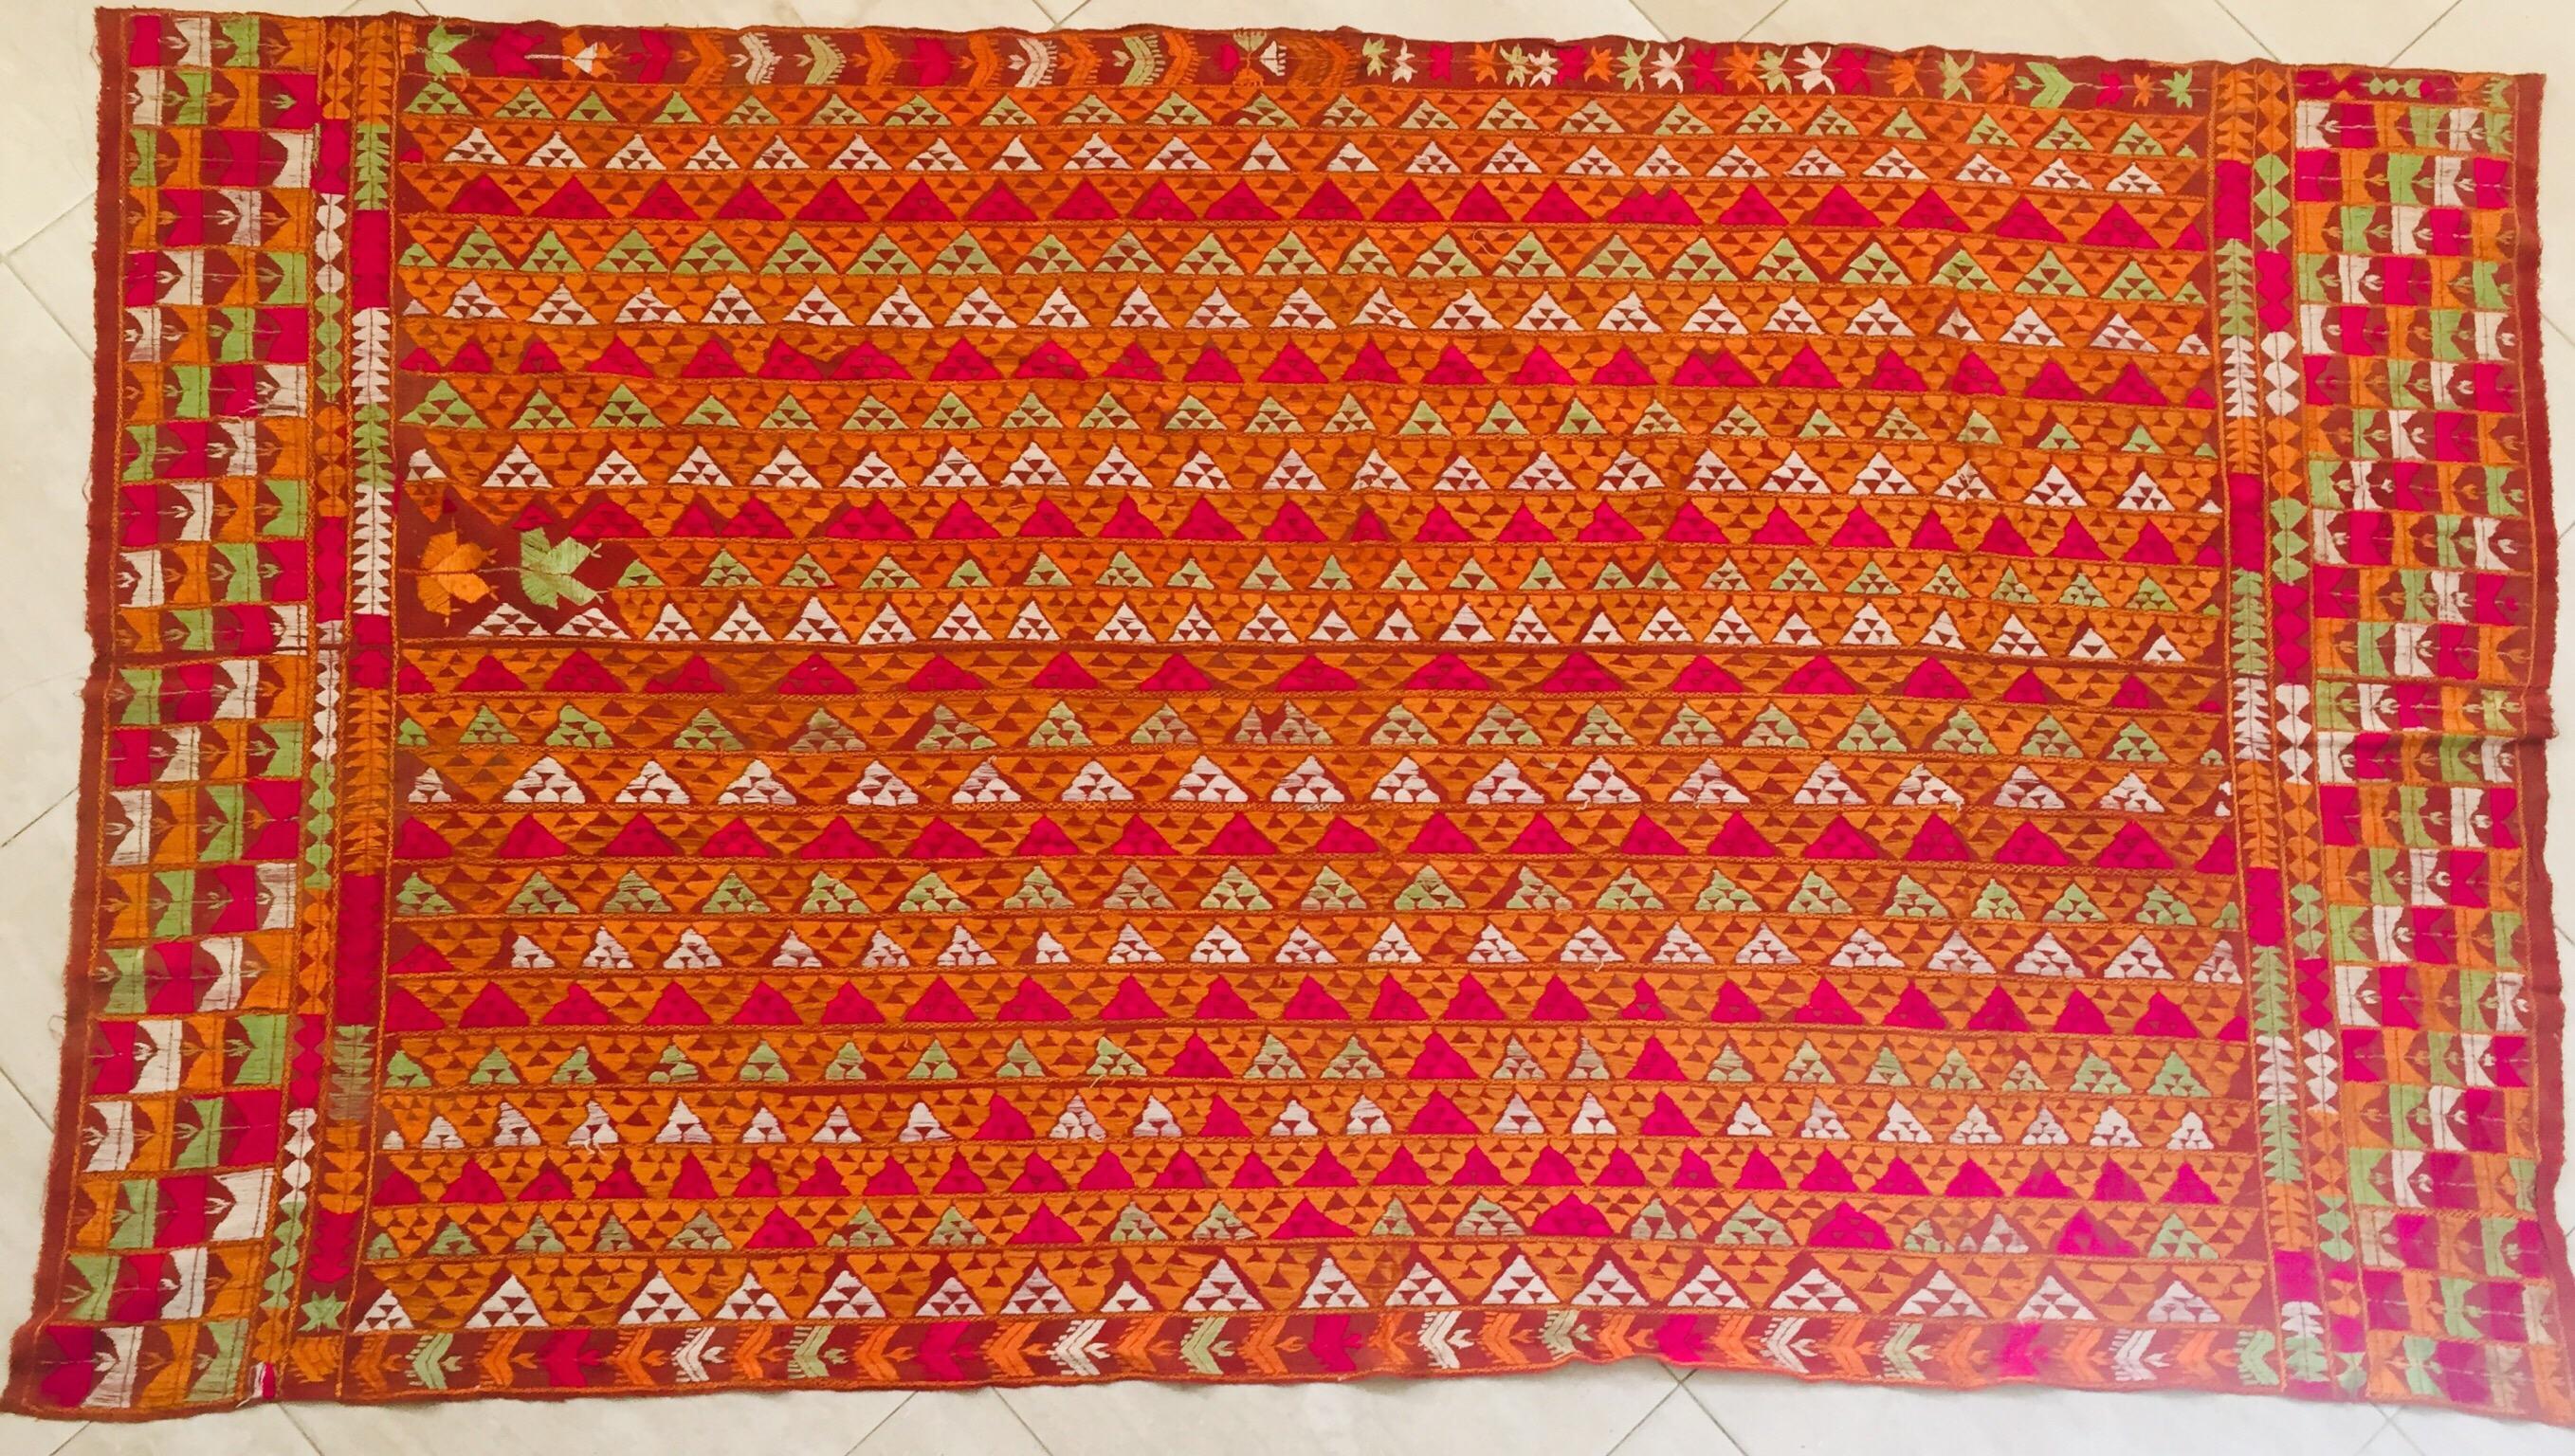 Ein seltenes, in Seide gesticktes Muster auf einem handgewebten Baumwollgrund.
Der Punjab ist bekannt für seine Phulkaris. Die Stickerei ist mit Seidengarn auf grobem, handgewebtem Baumwollstoff ausgeführt. Auf den Phulkaris sind in der Regel